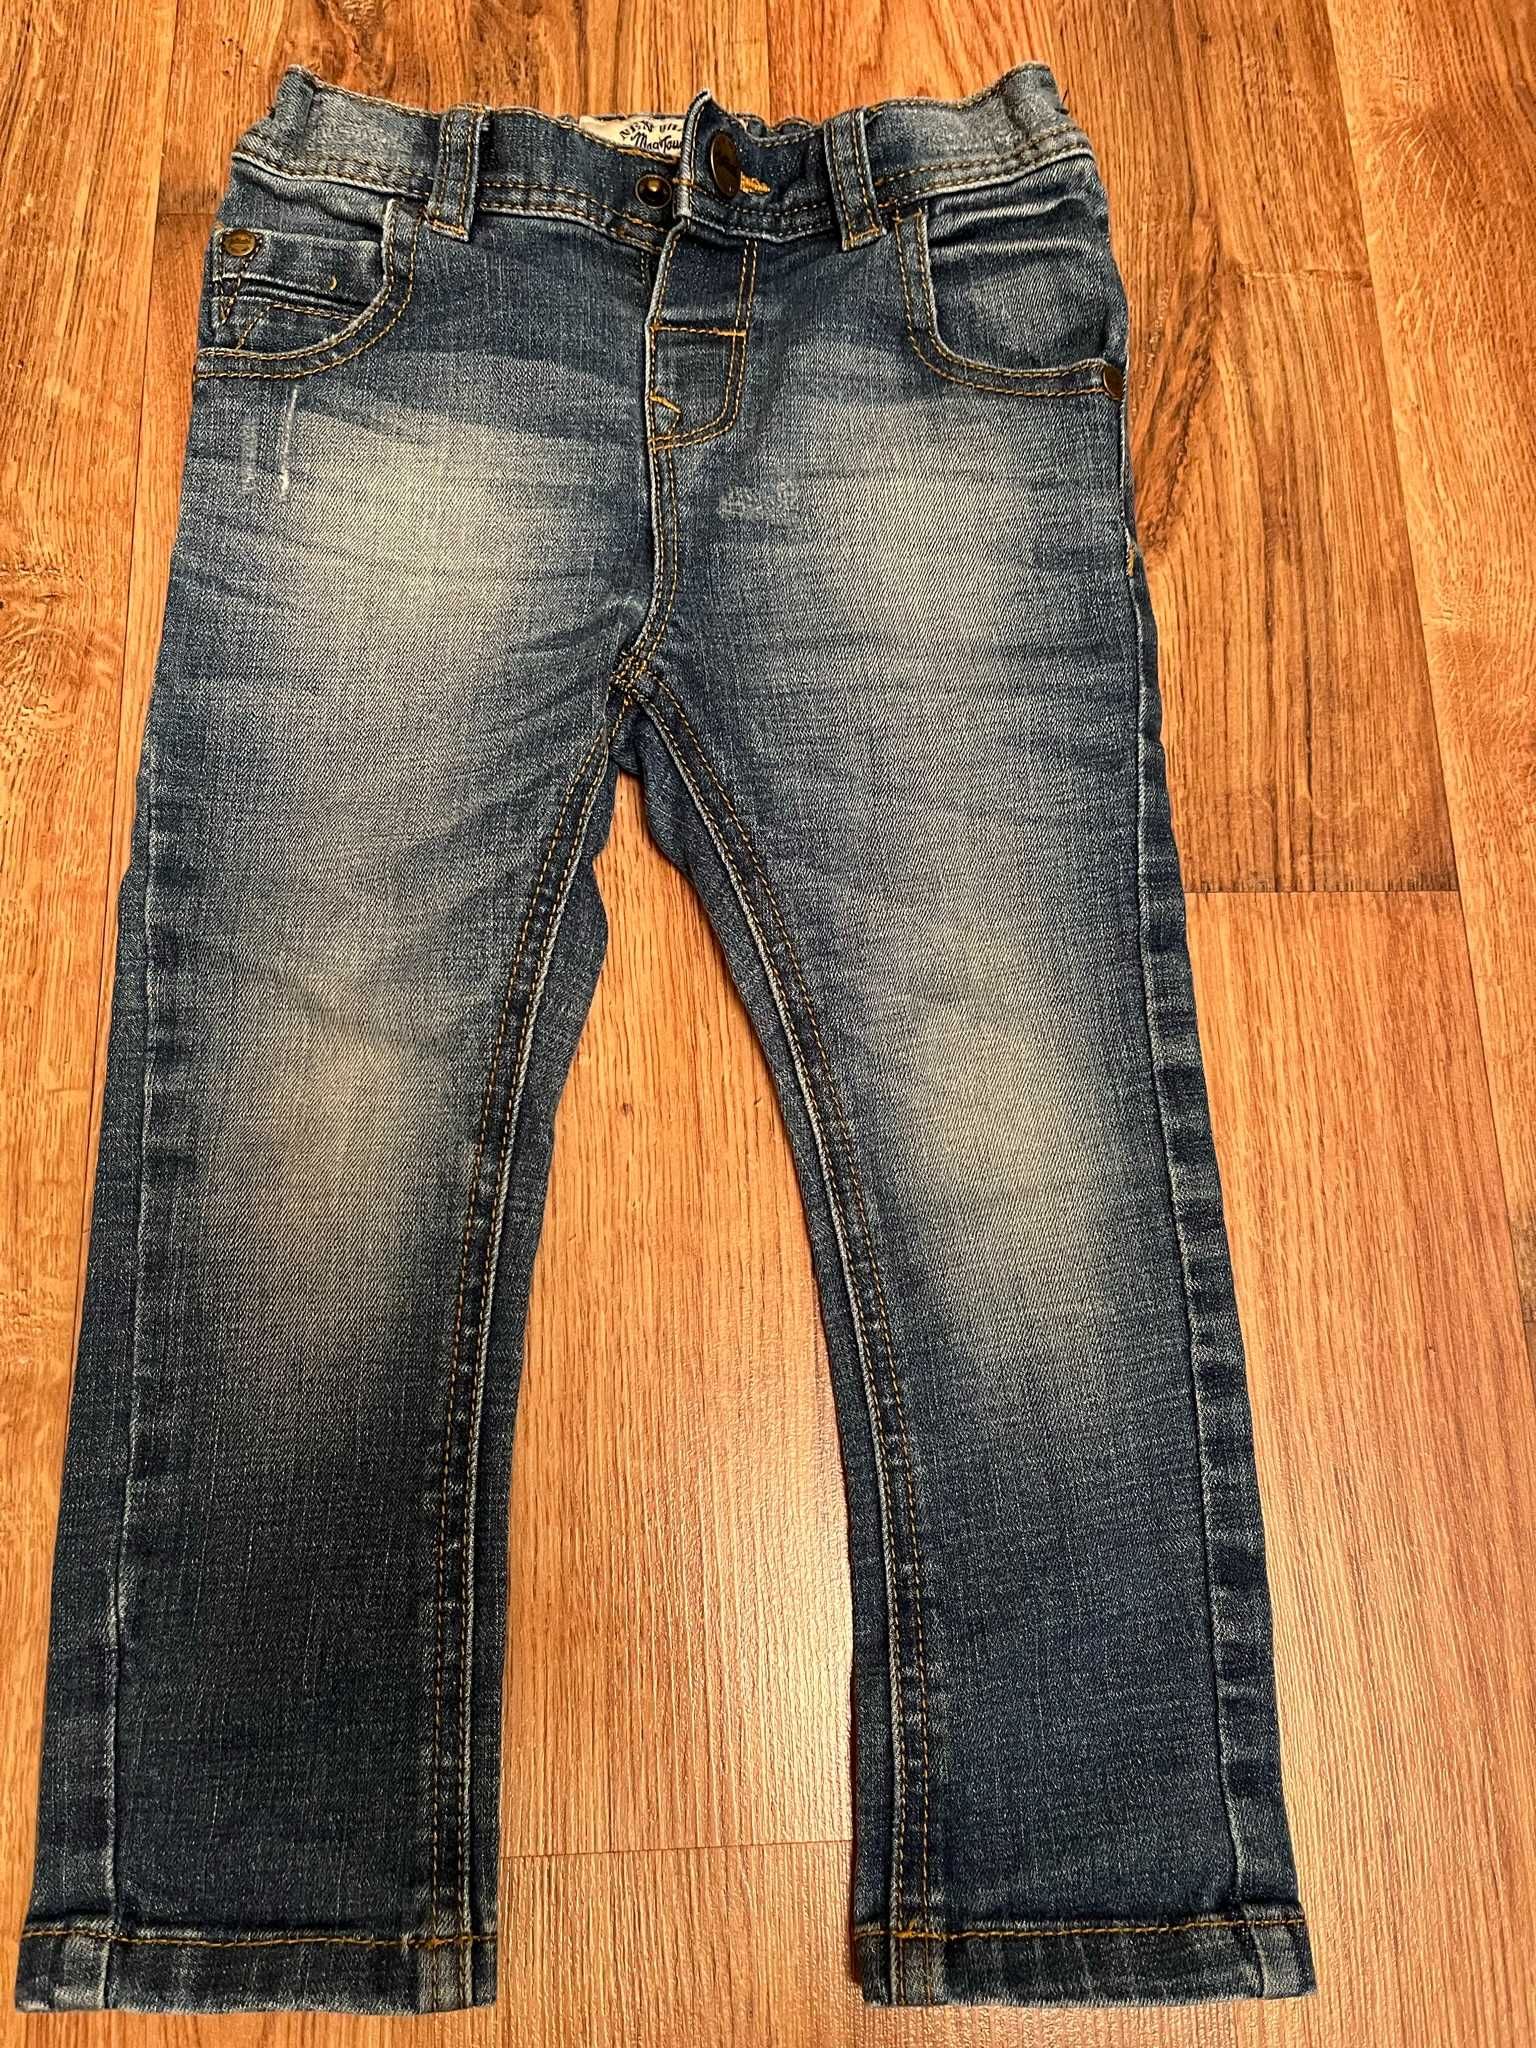 джинсы детские, бренд Next, размер 1,5-2 года, 92 см